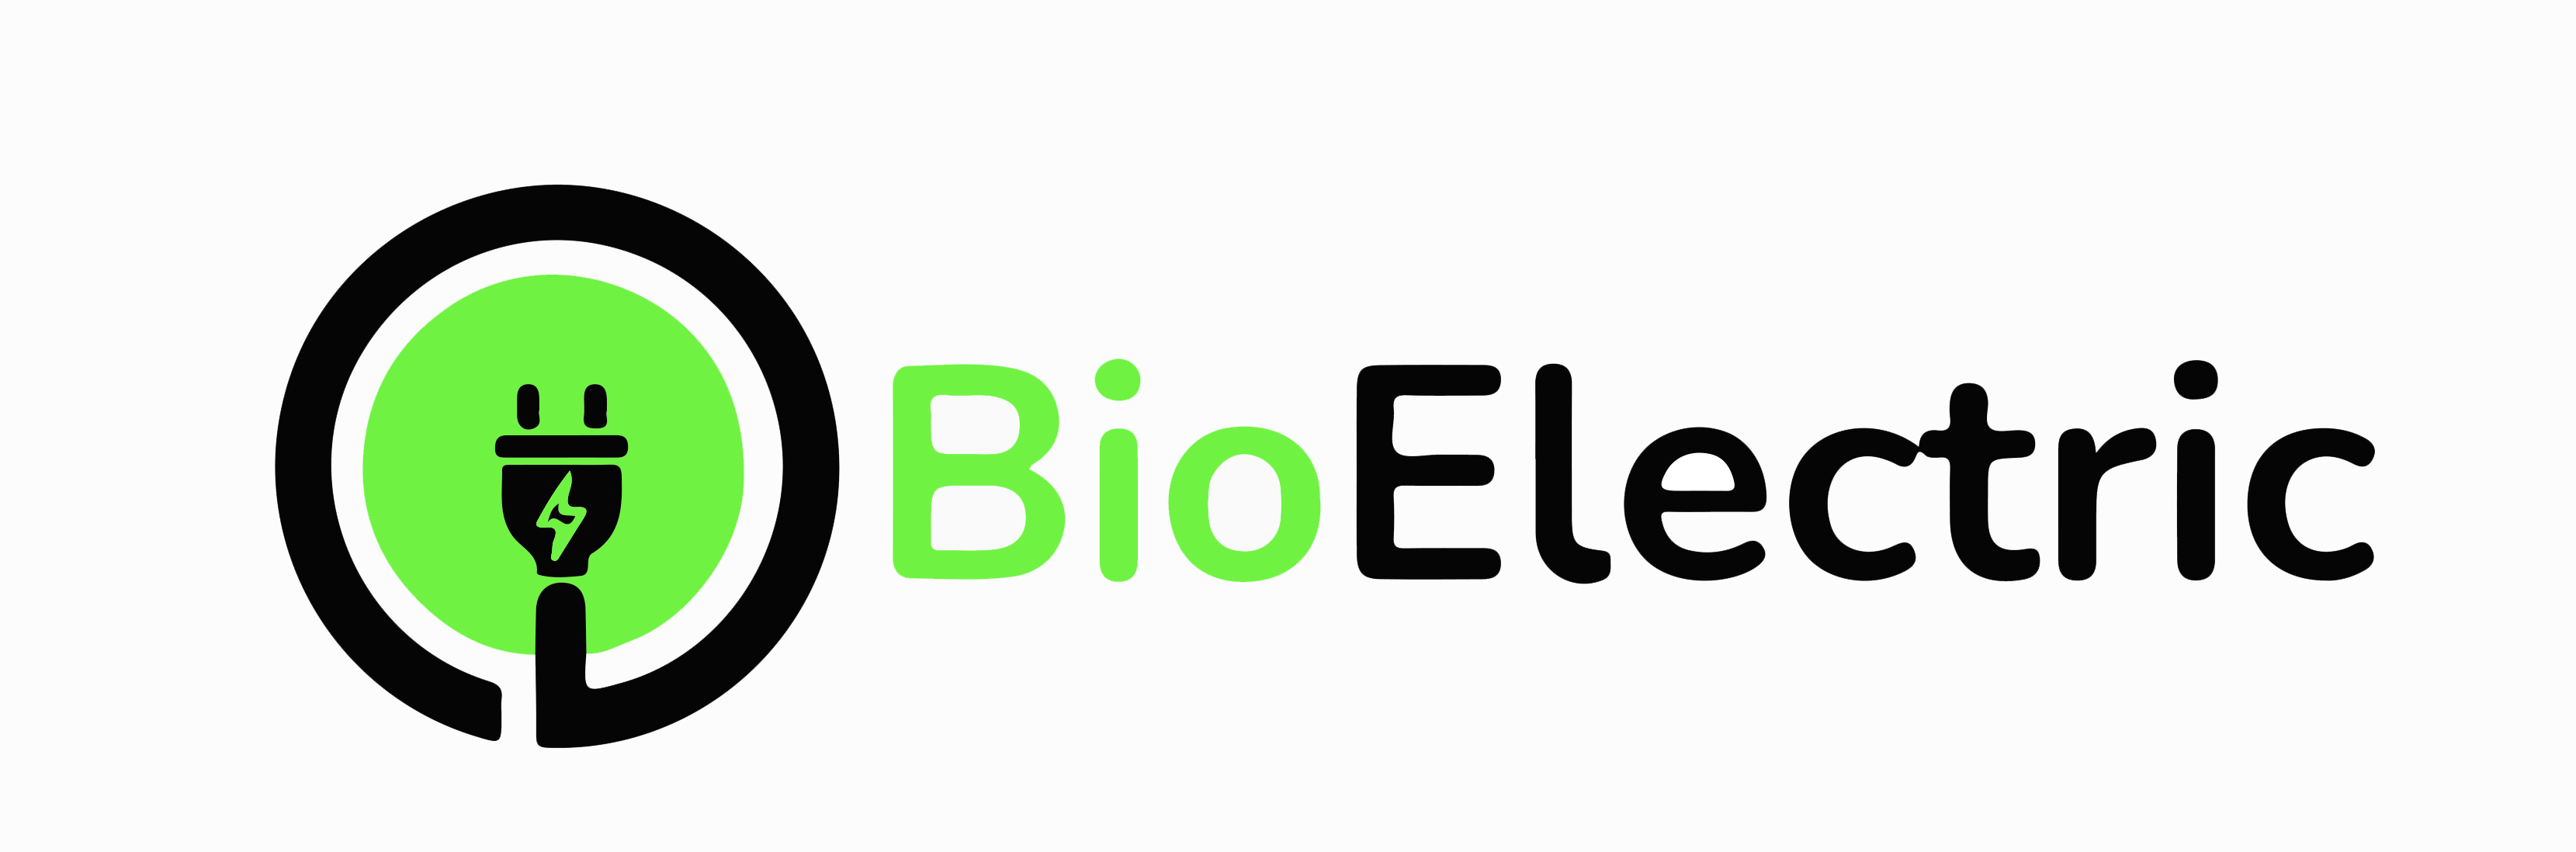 Bioelectric